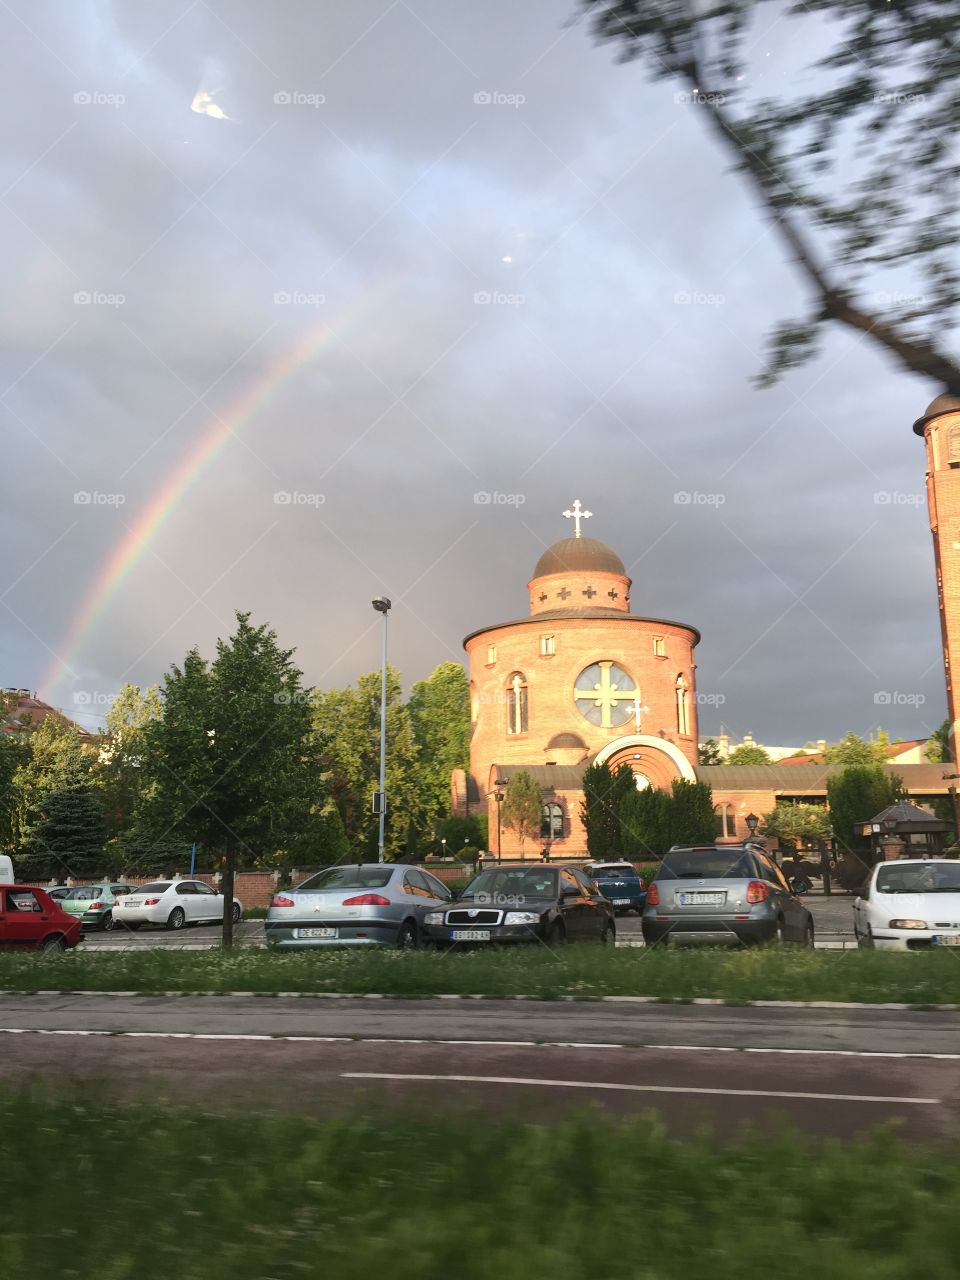 Rainbow after rain 